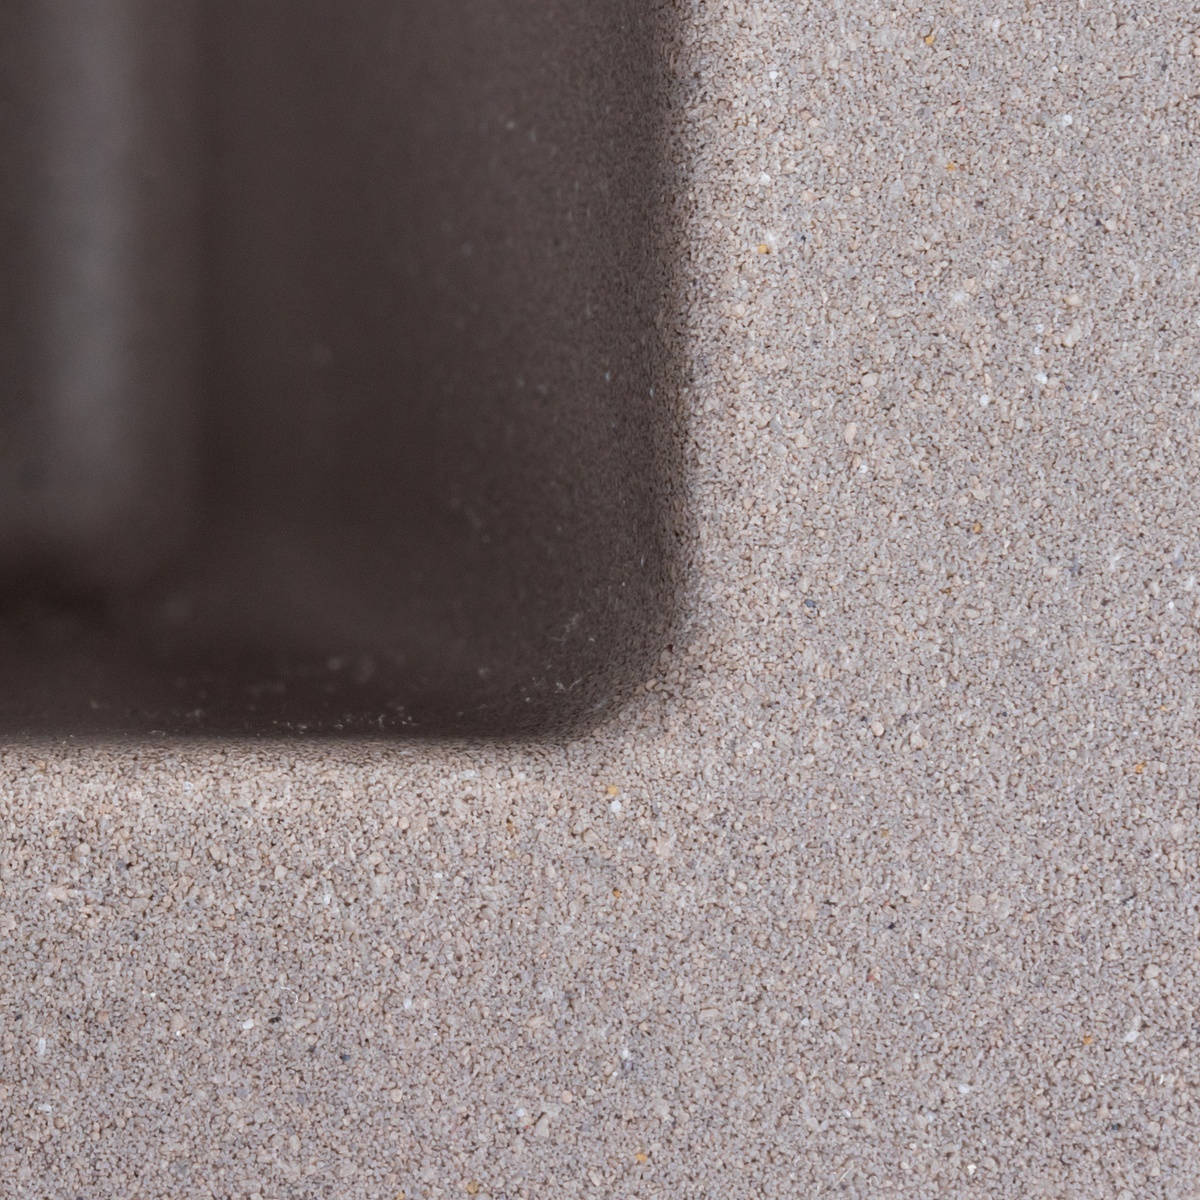 Мийка для кухні гранітна квадратна PLATINUM 4040 RUBA 440x440x200мм без сифону коричнева PLS-A40837